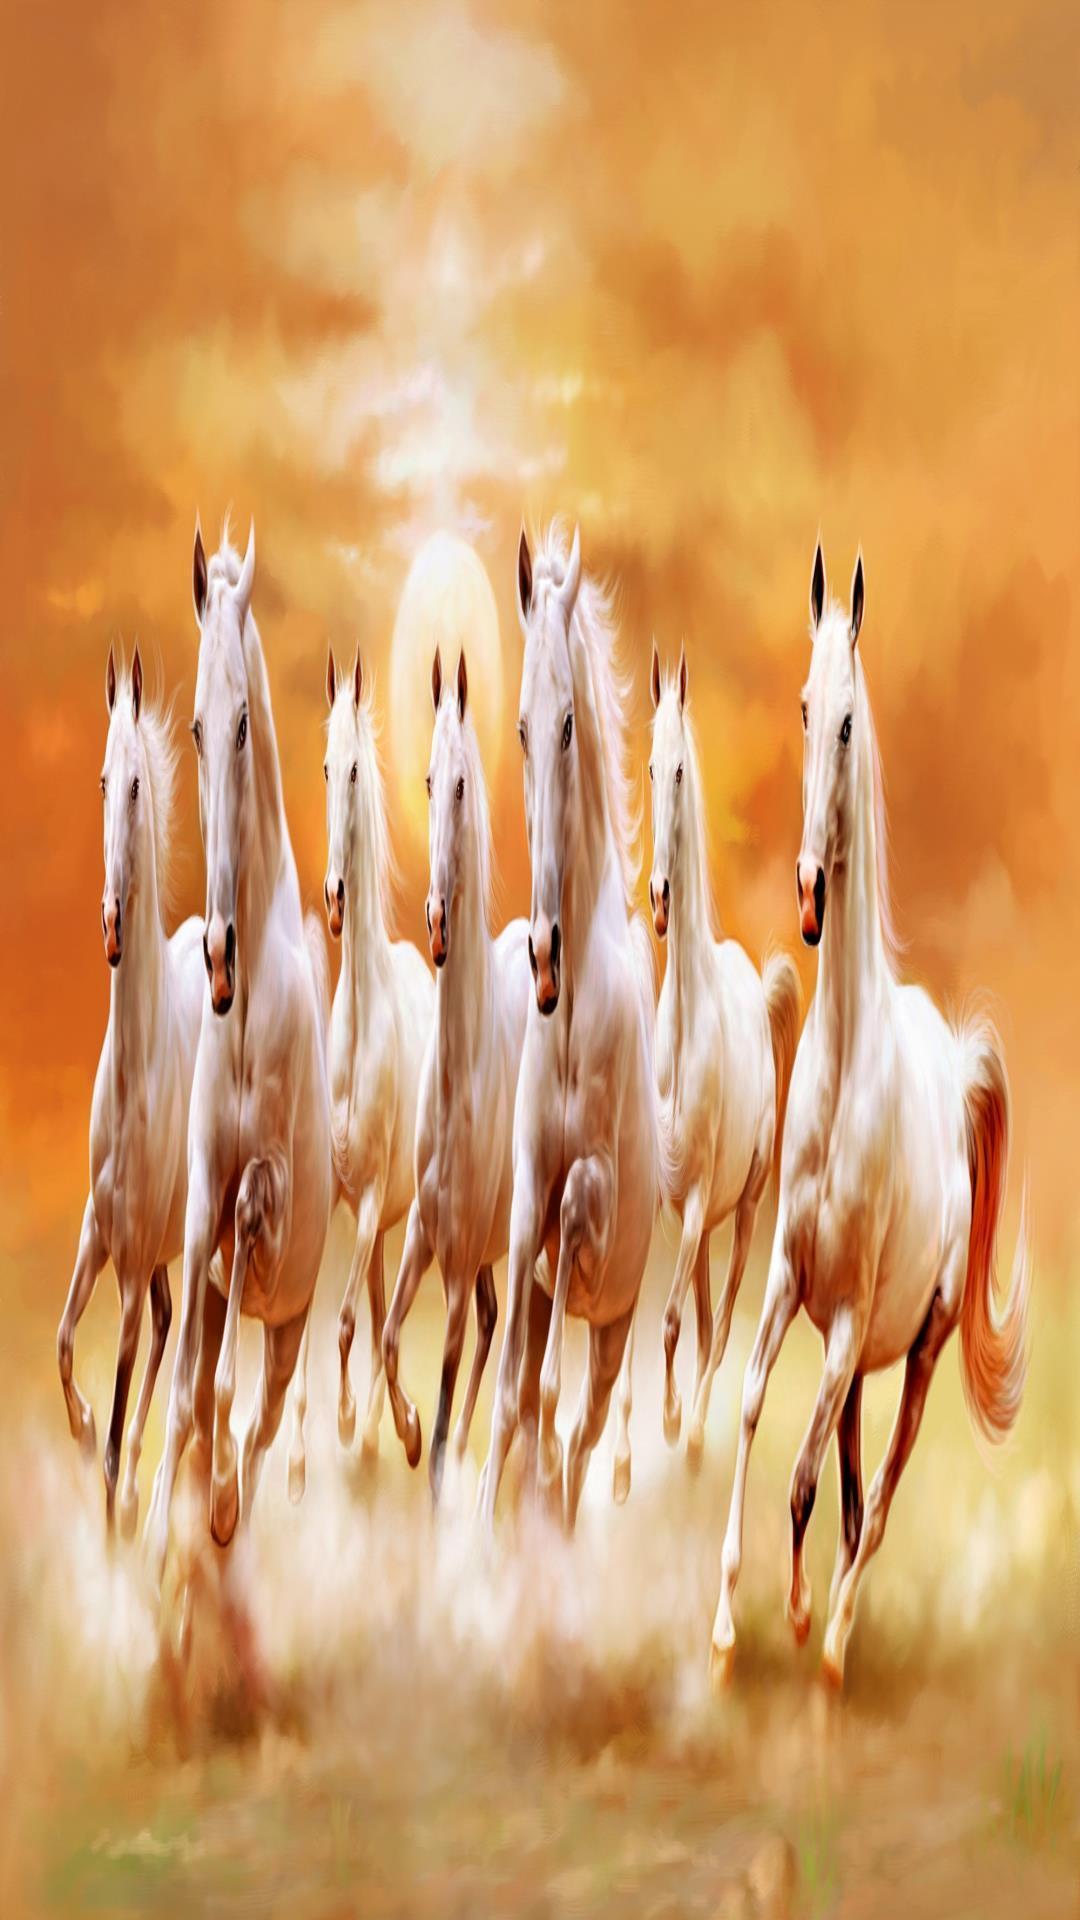 Seven Horses Wallpapers - Top Những Hình Ảnh Đẹp